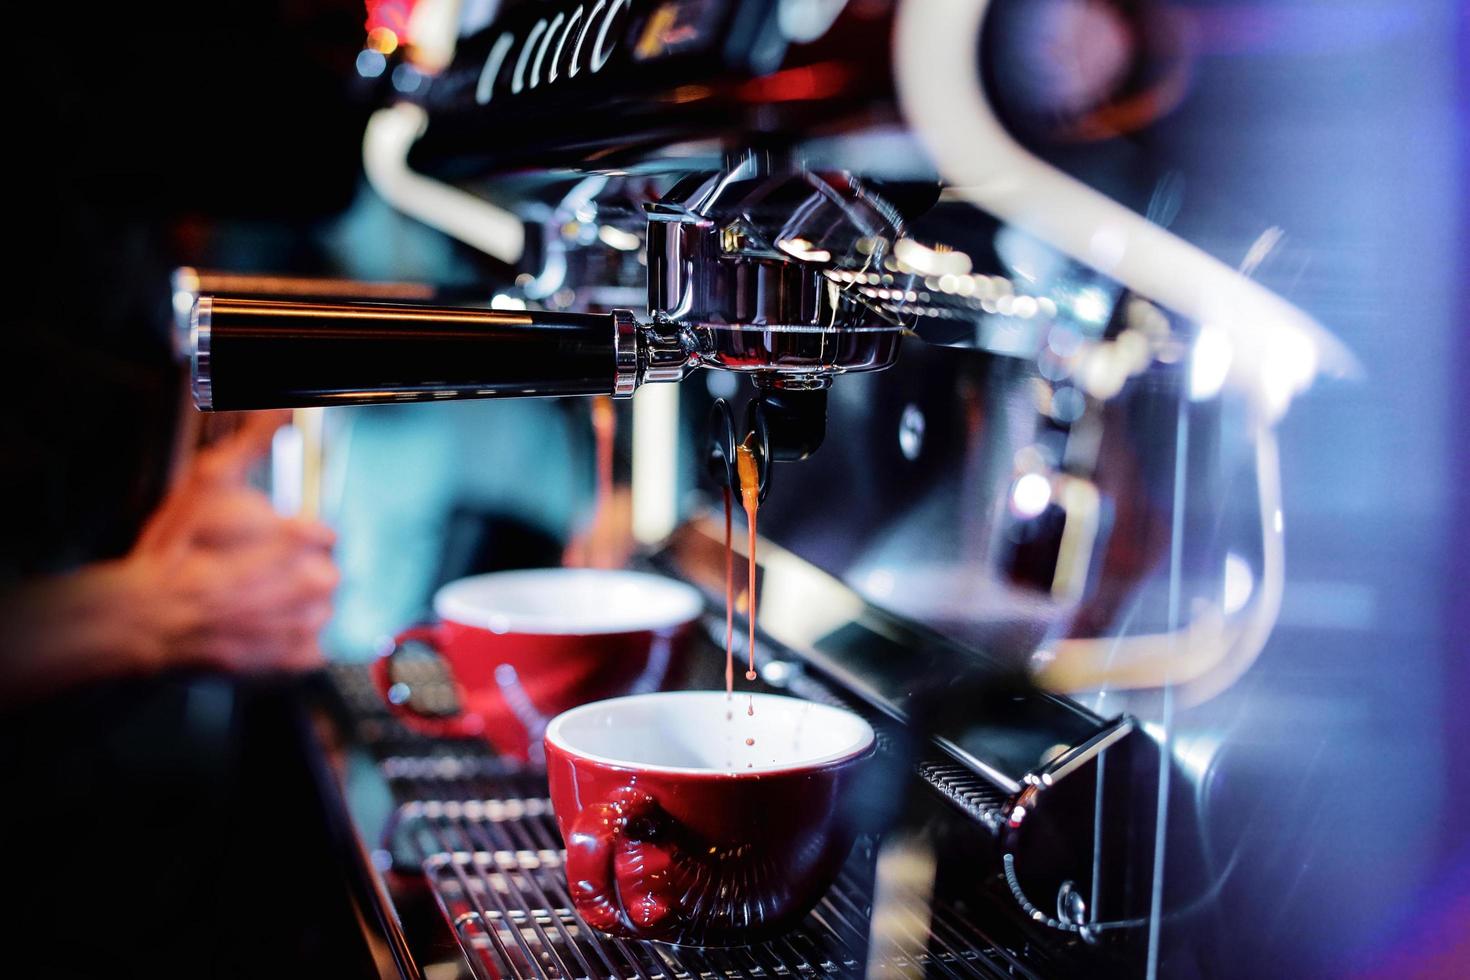 Espresso aus der Kaffeemaschine im Café geschossen foto